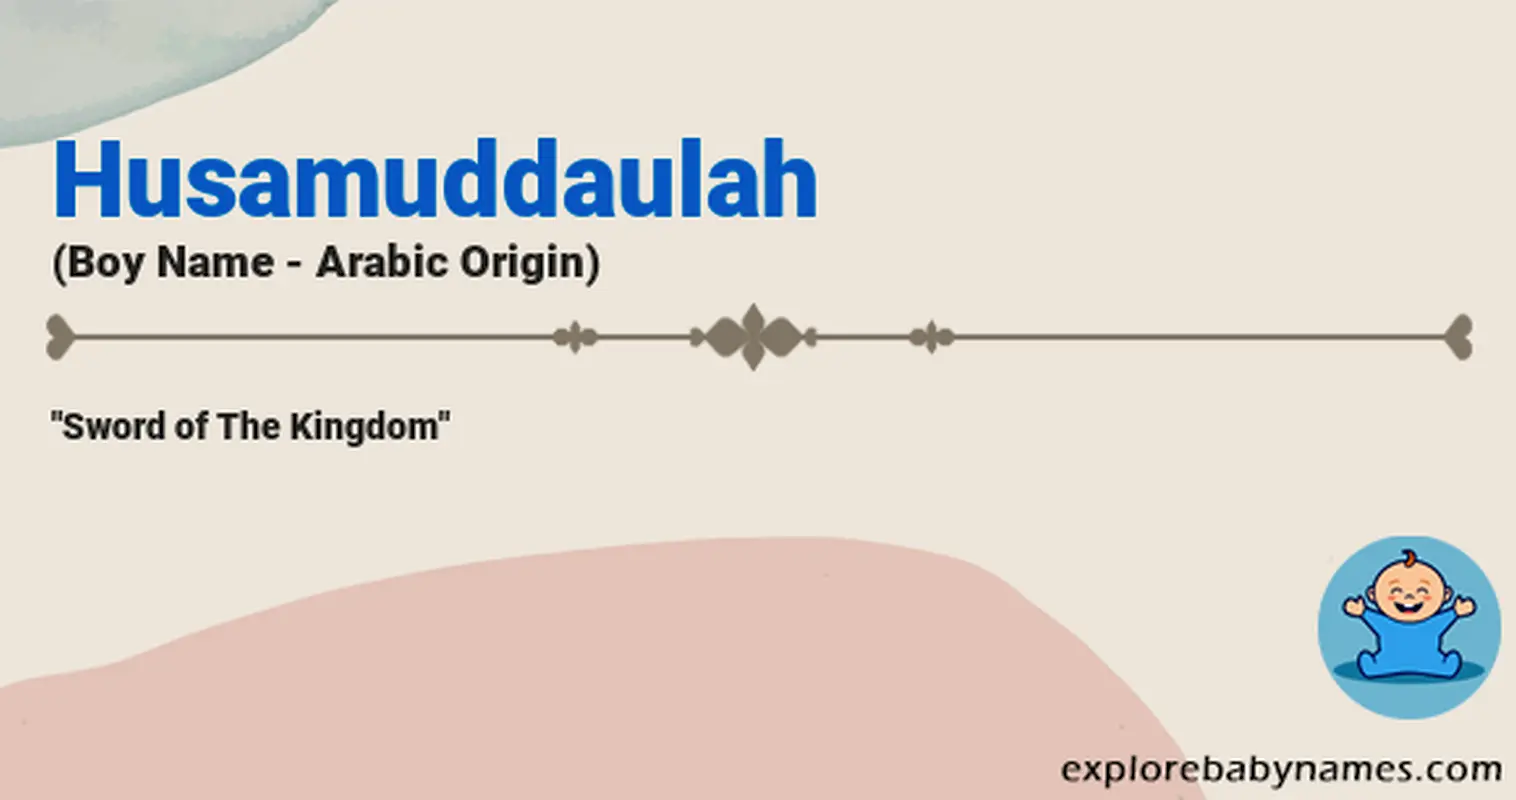 Meaning of Husamuddaulah